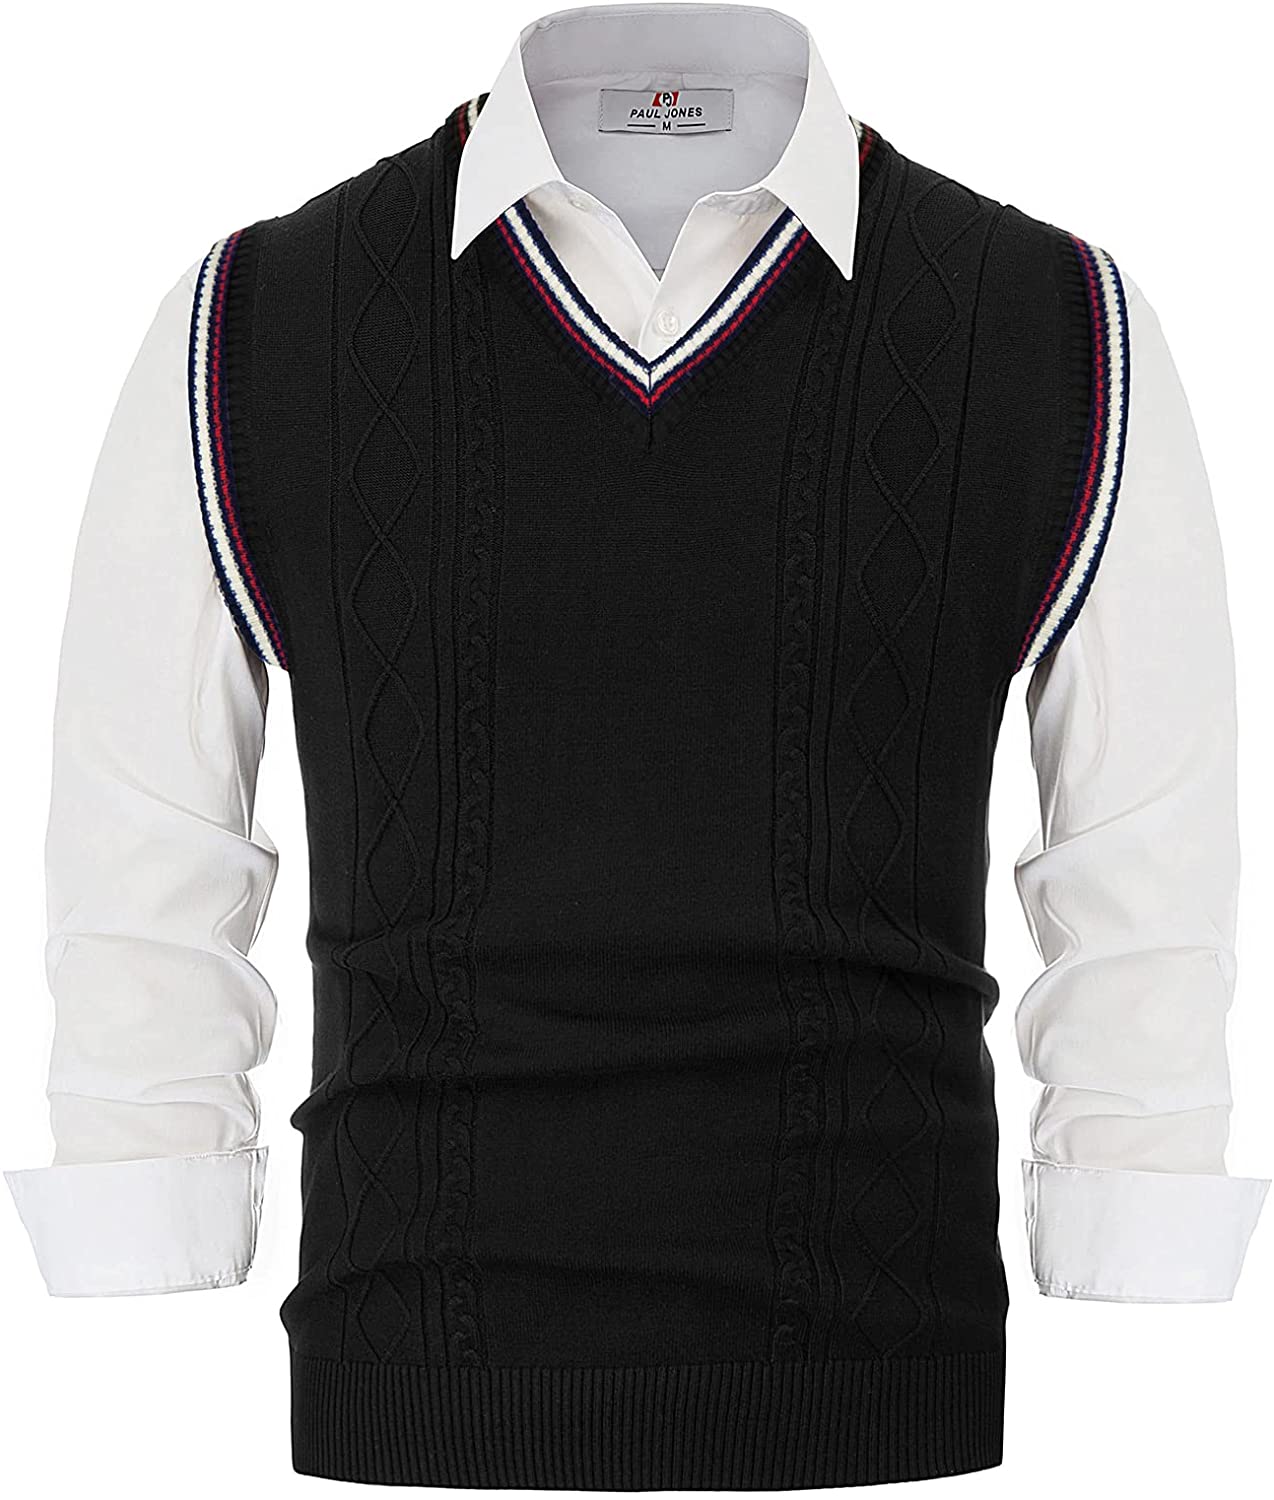 PJ PAUL JONES Men's Sweater Vest V-Neck Sleeveless Cable Knitted Cardigan  Vest